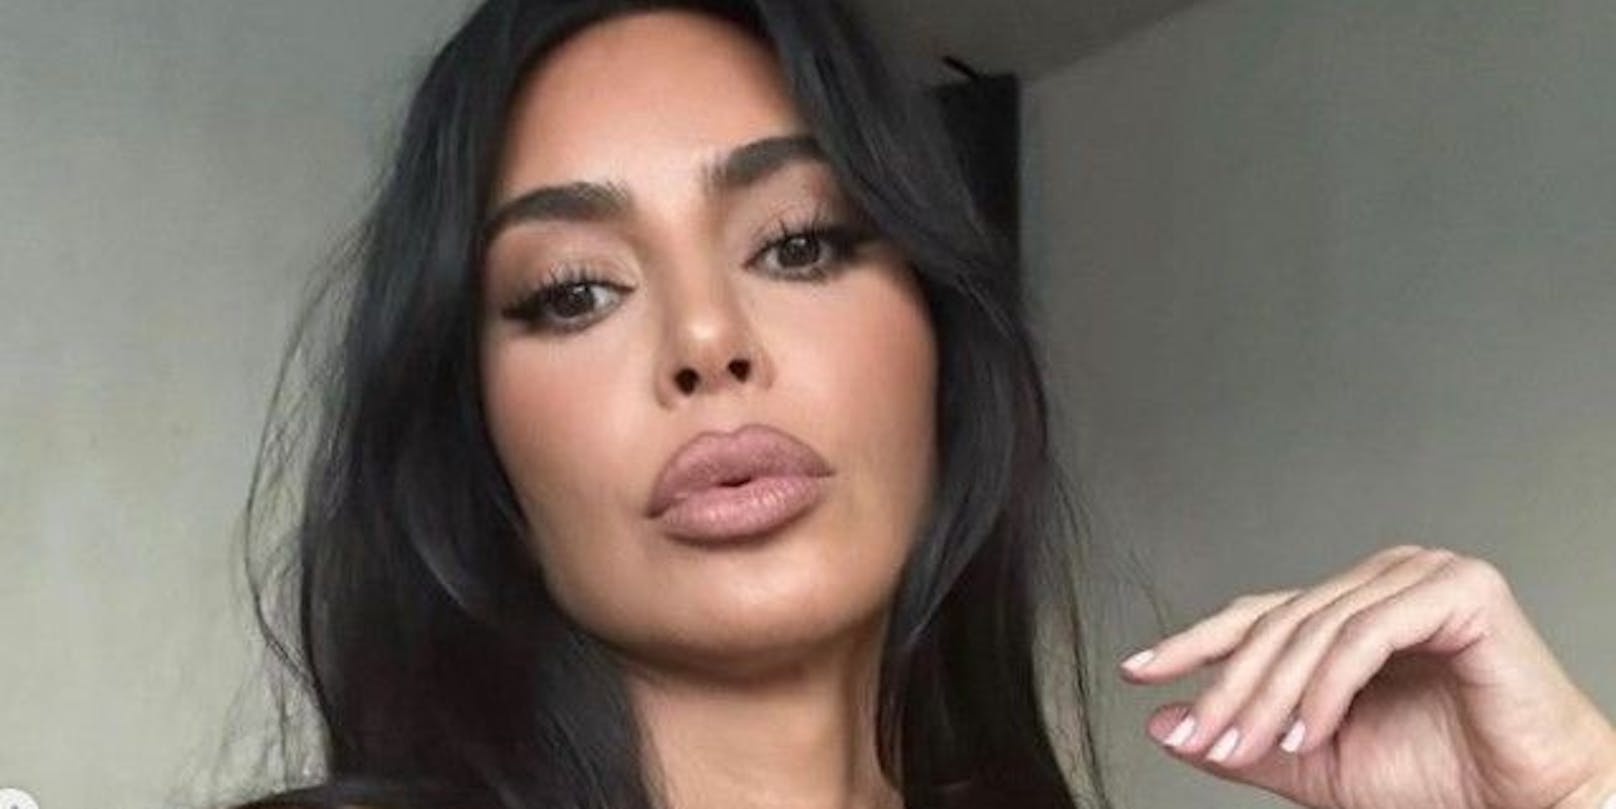 Gewohnt freizügig zeigt sich Kim Kardashian wieder im sommerlichen Look auf Social Media.